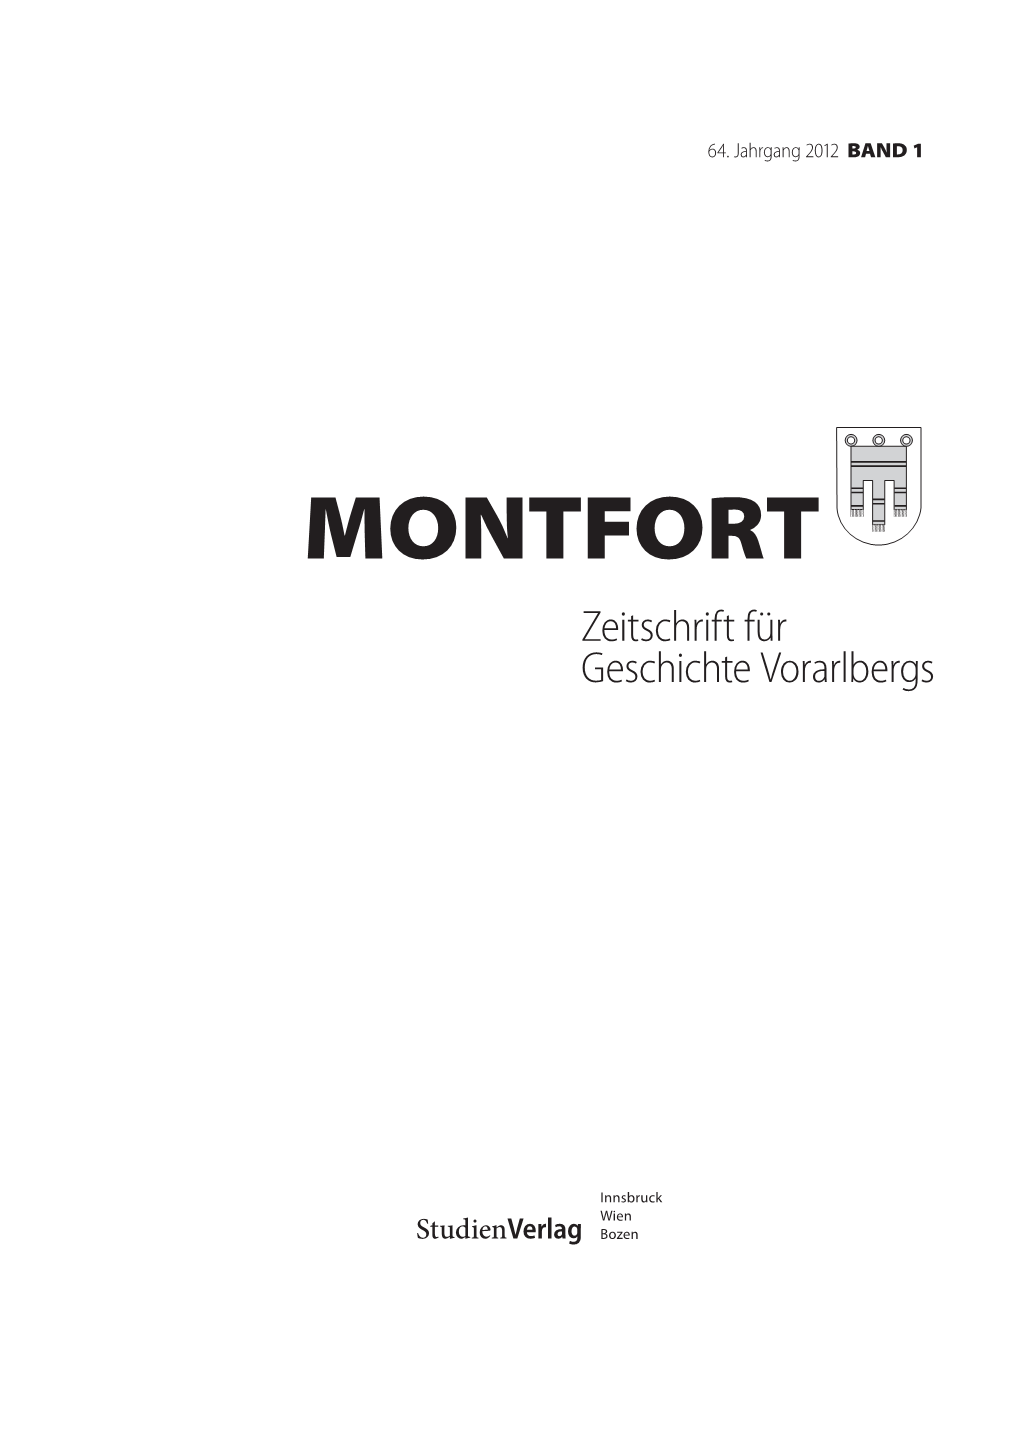 MONTFORT Zeitschrift Für Geschichte Vorarlbergs